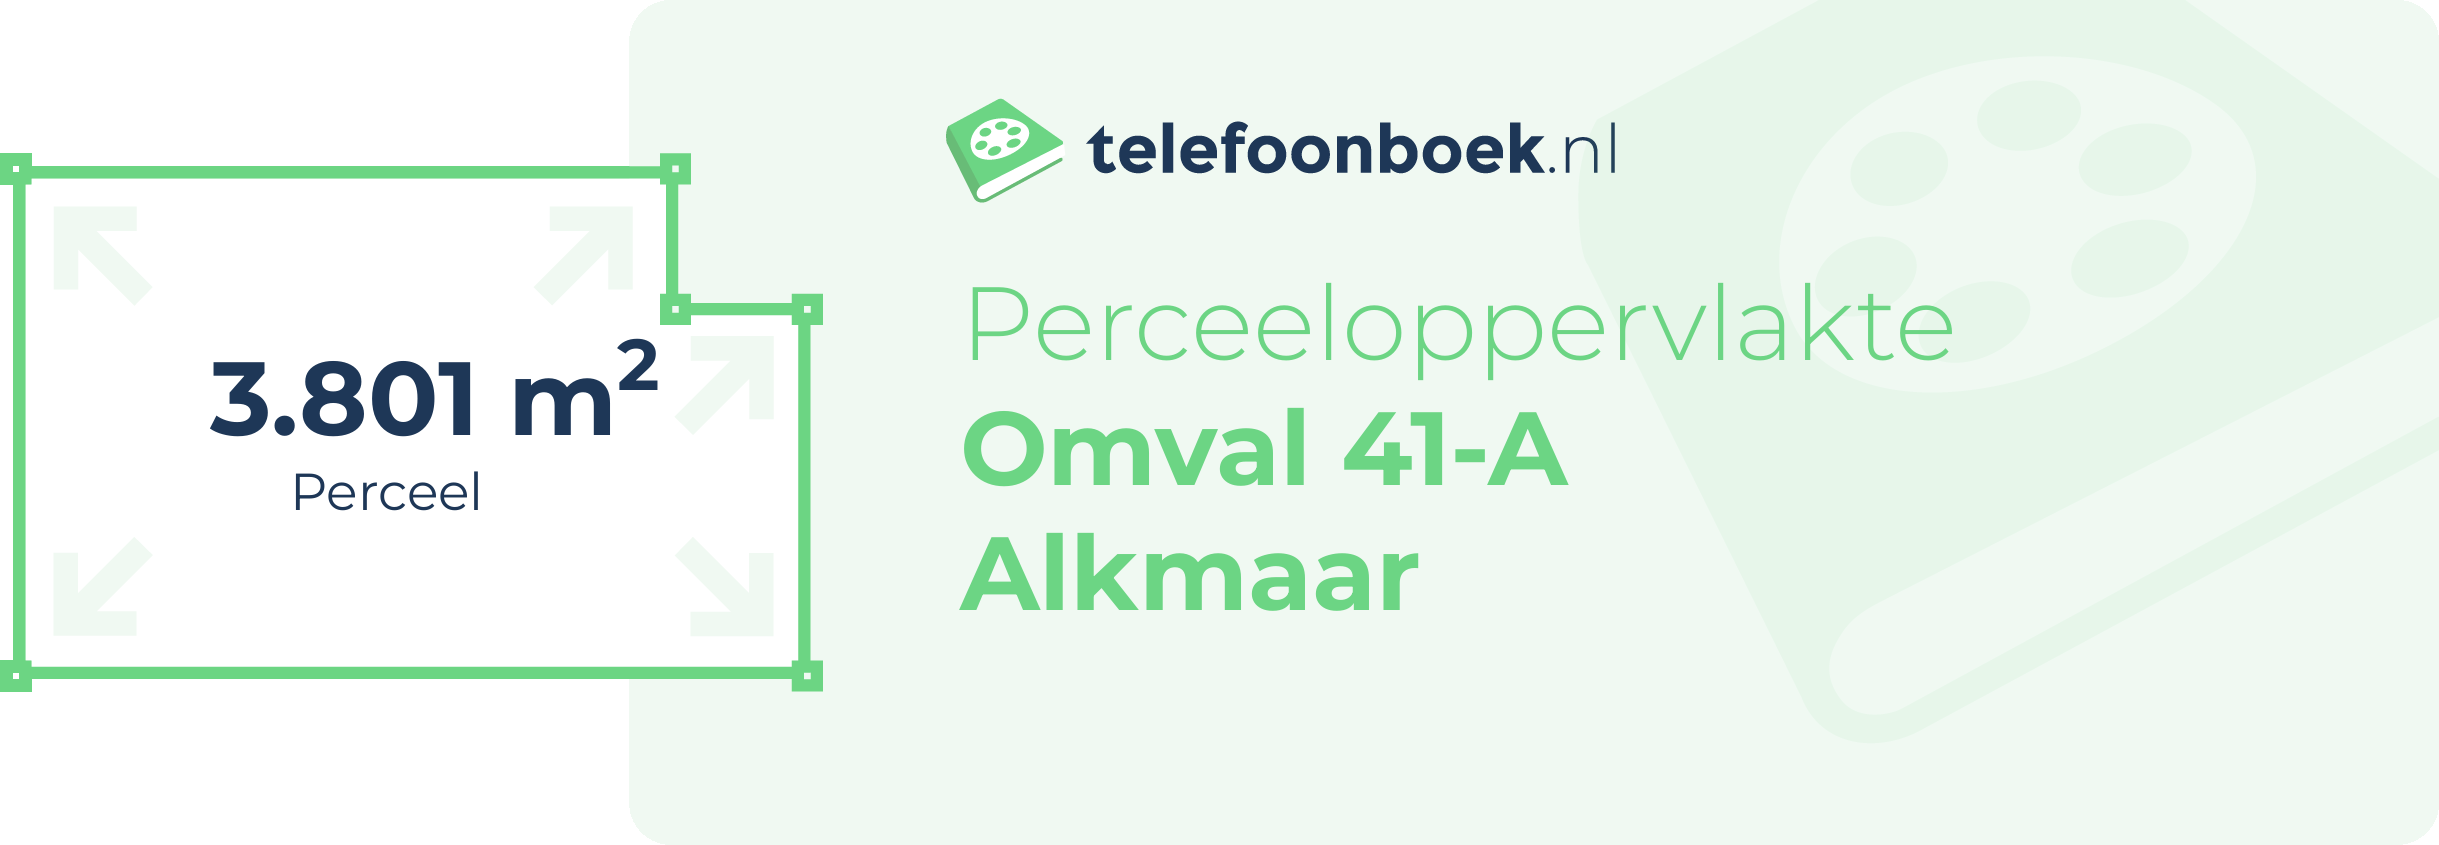 Perceeloppervlakte Omval 41-A Alkmaar